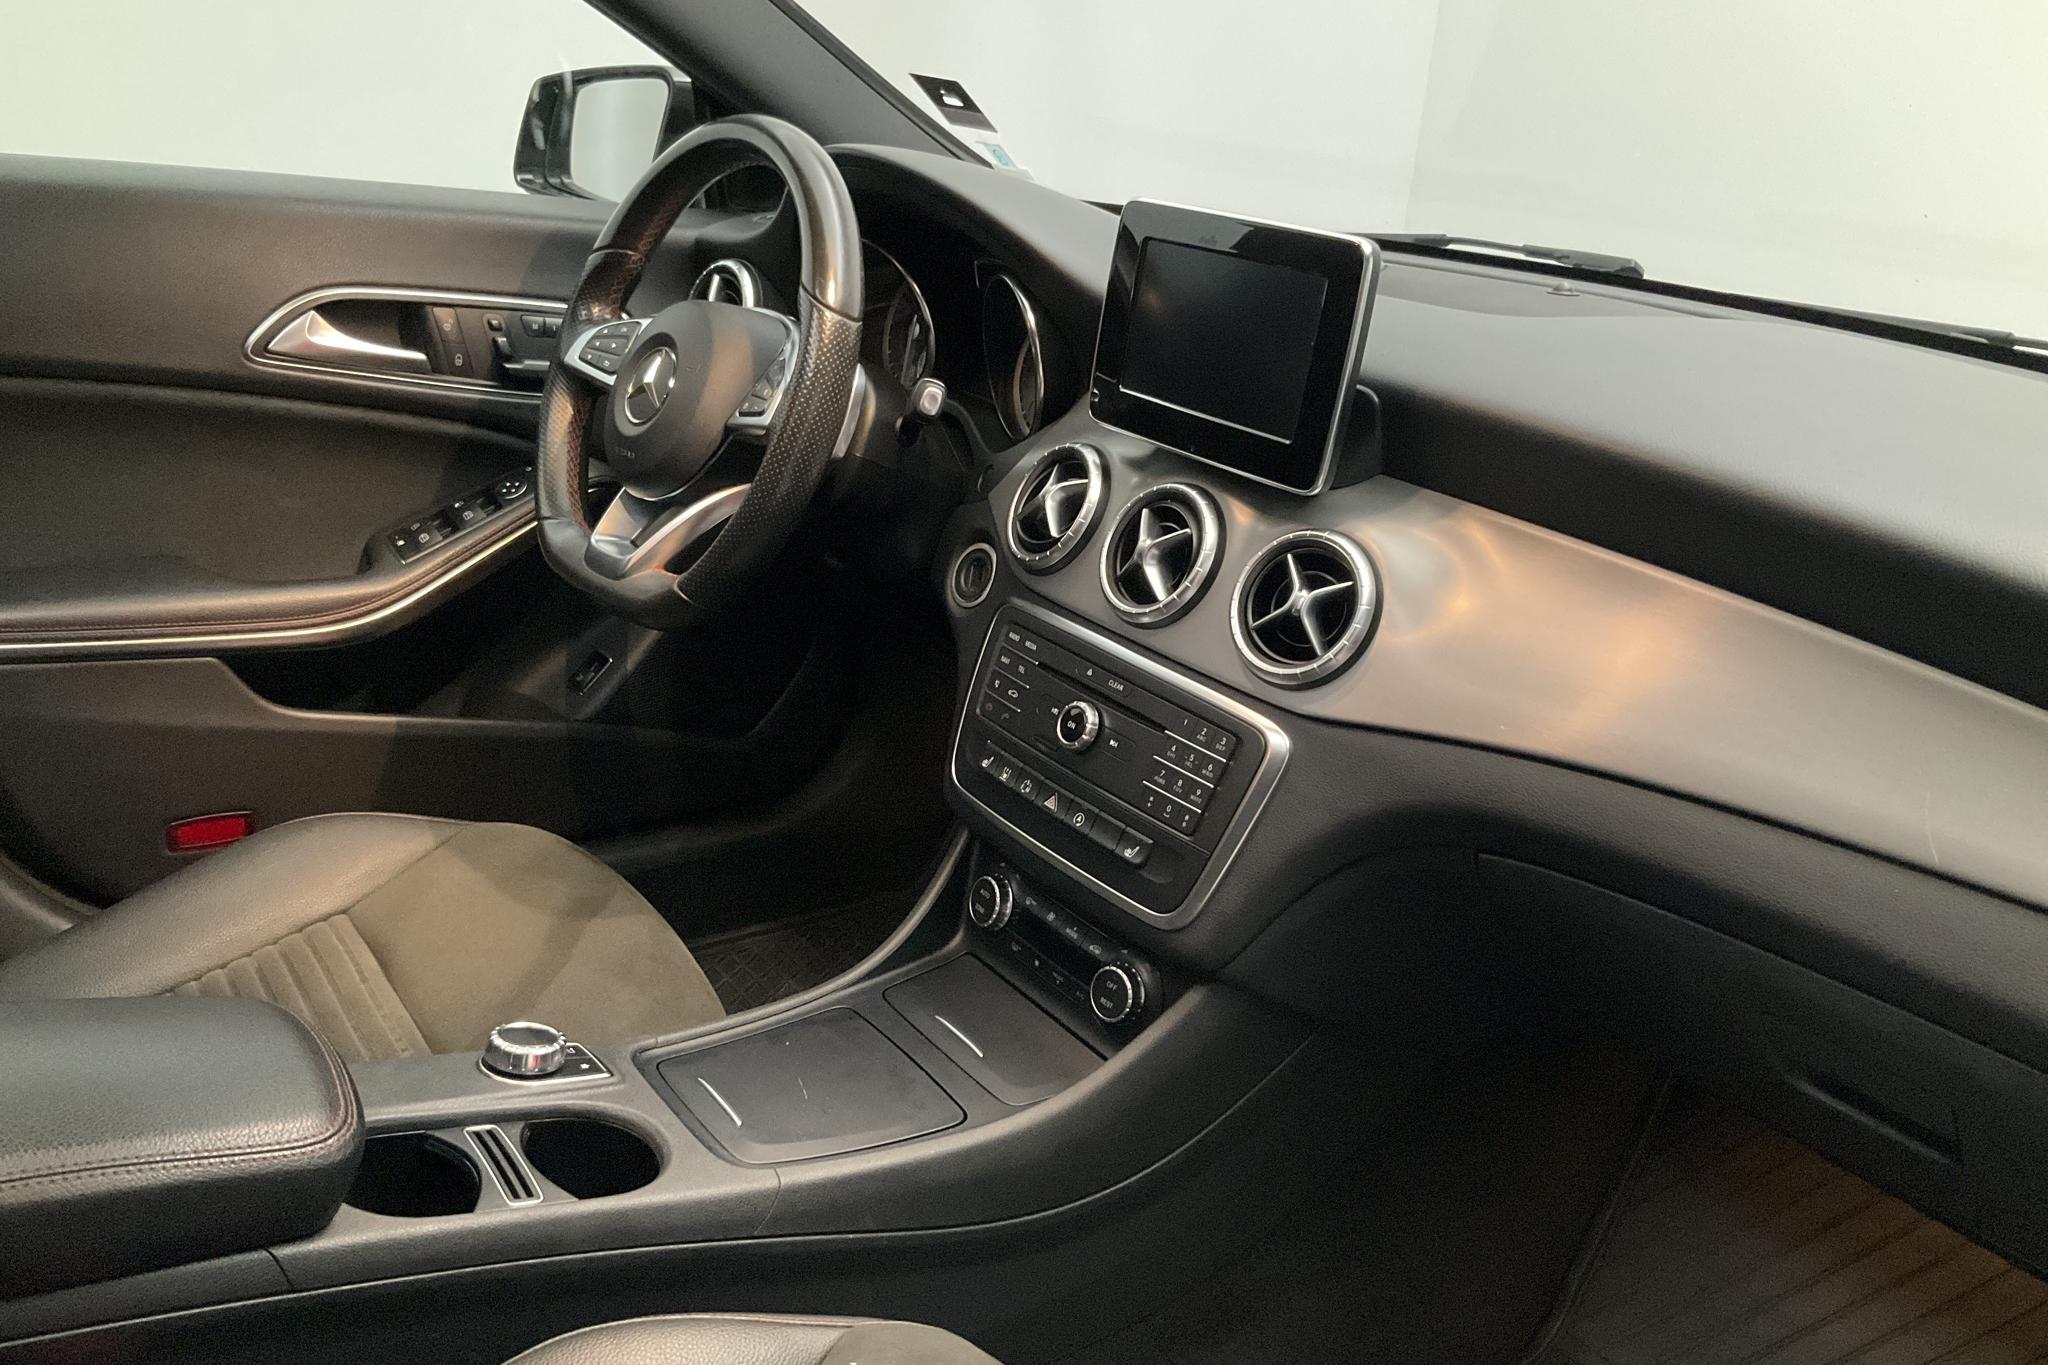 Mercedes CLA 200 CDI 4MATIC (136hk) - 130 690 km - Automatic - Dark Grey - 2015